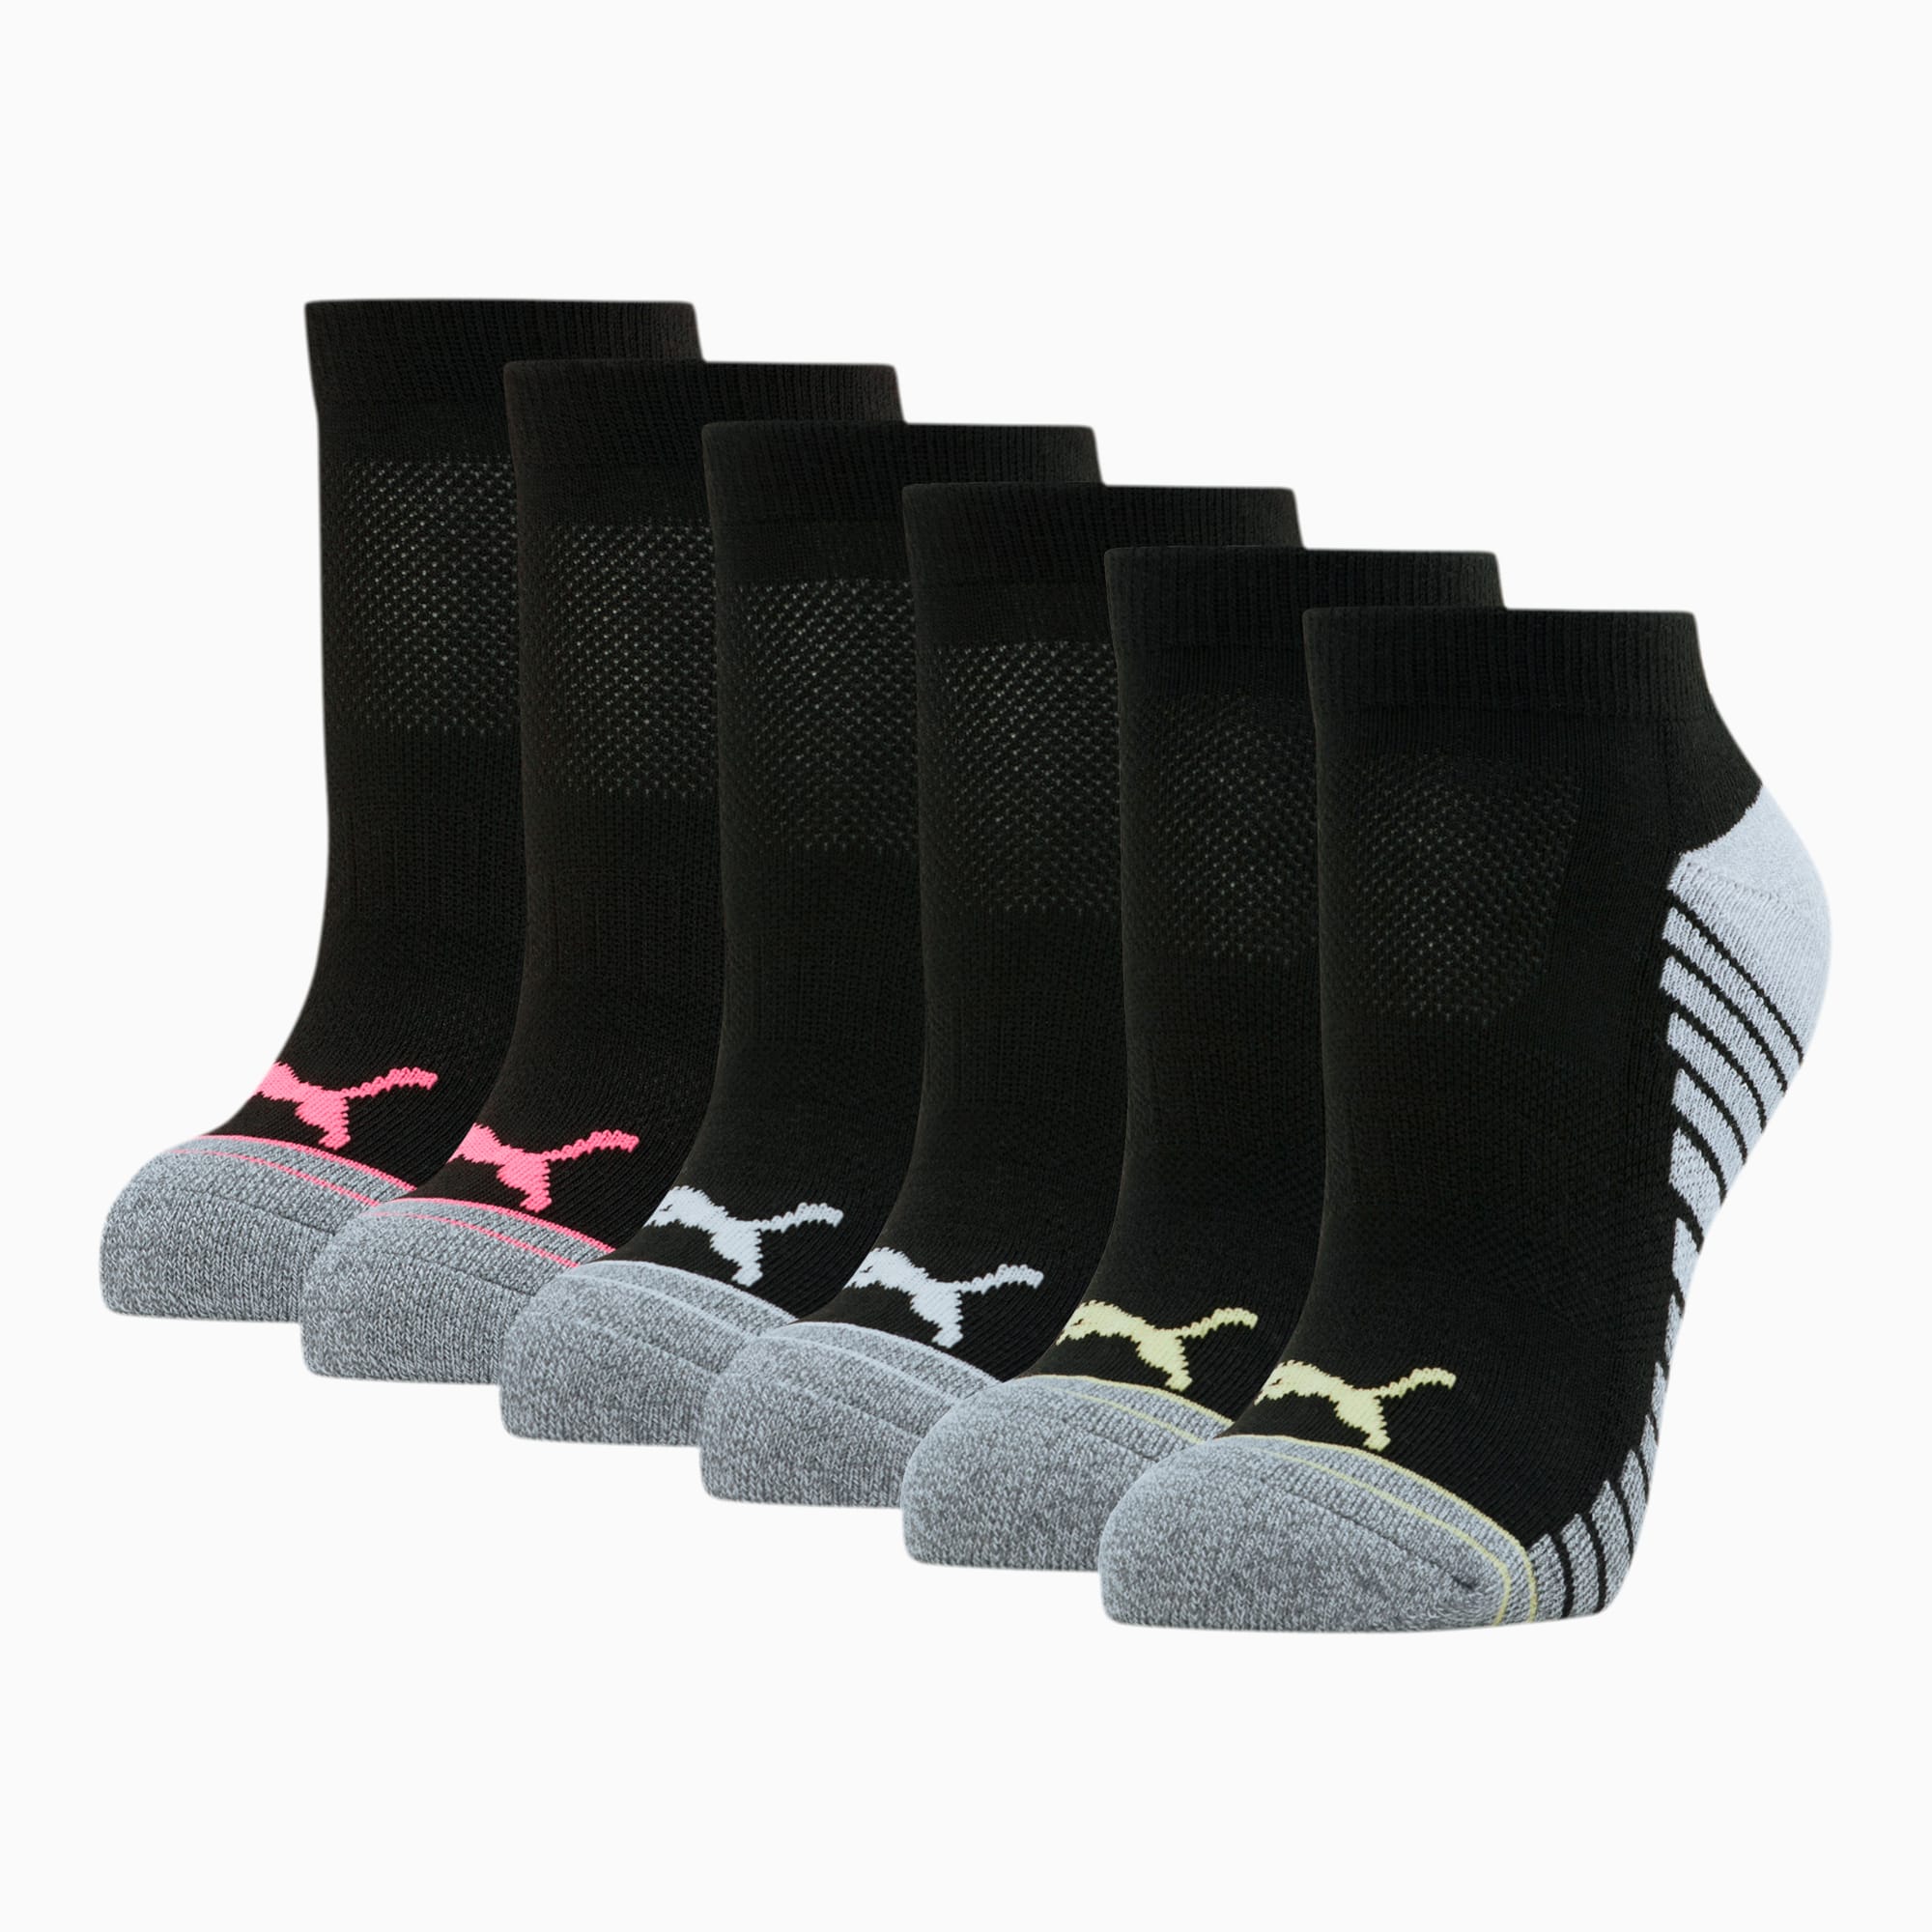 puma women's low cut socks